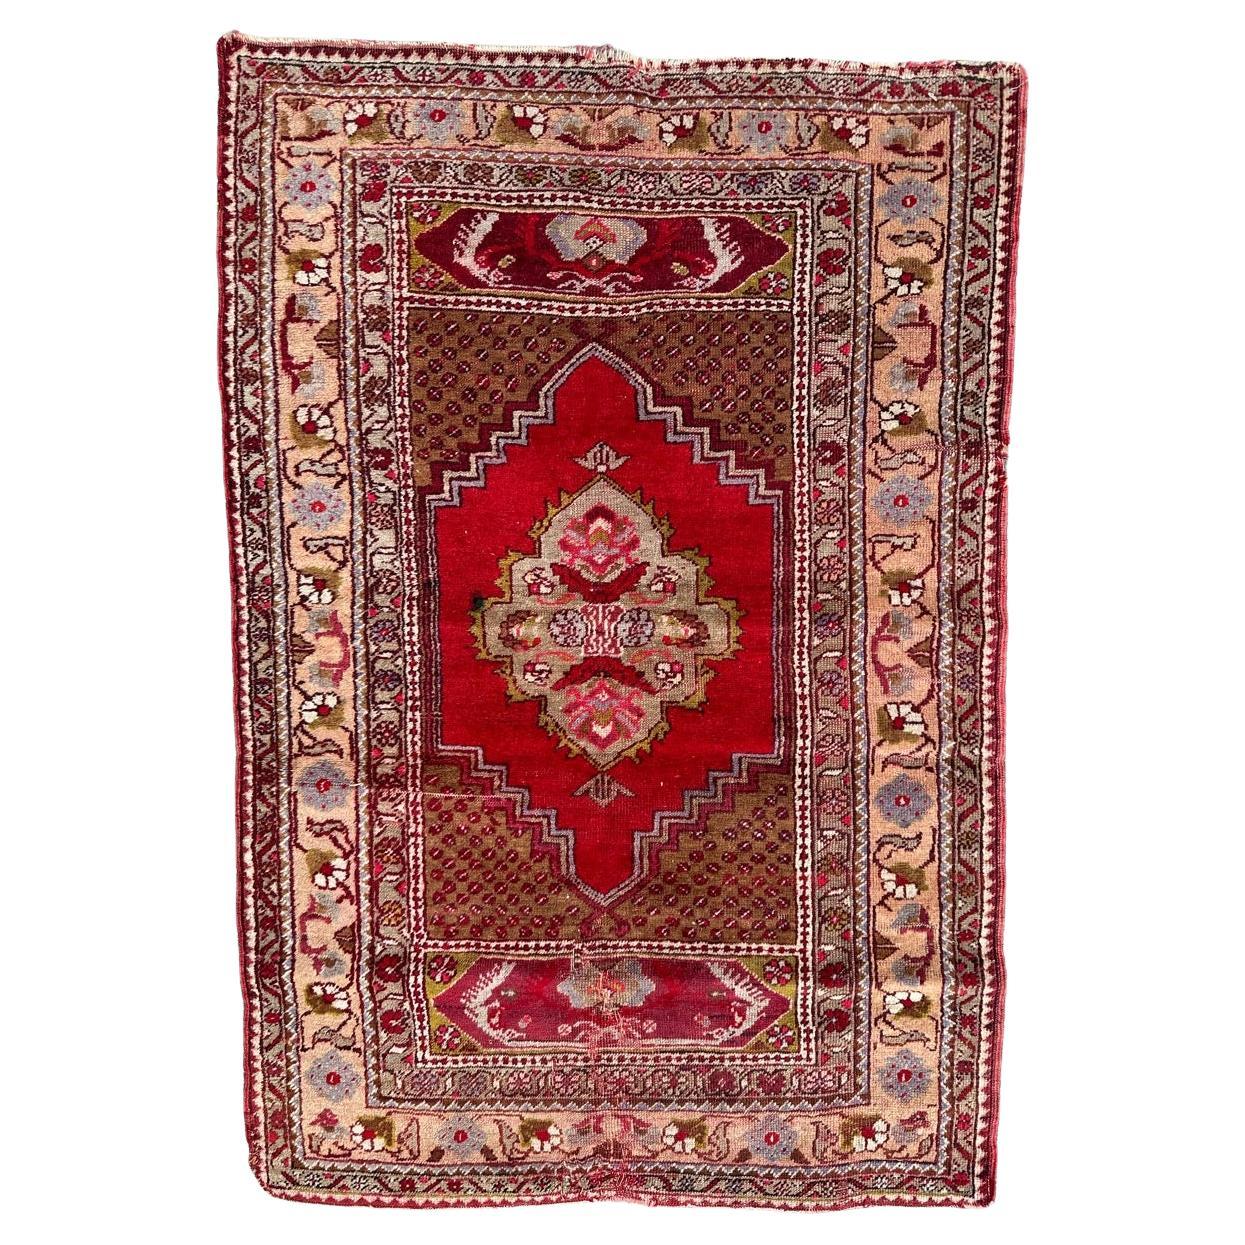 Bobyrug’s nice antique Turkish rug For Sale